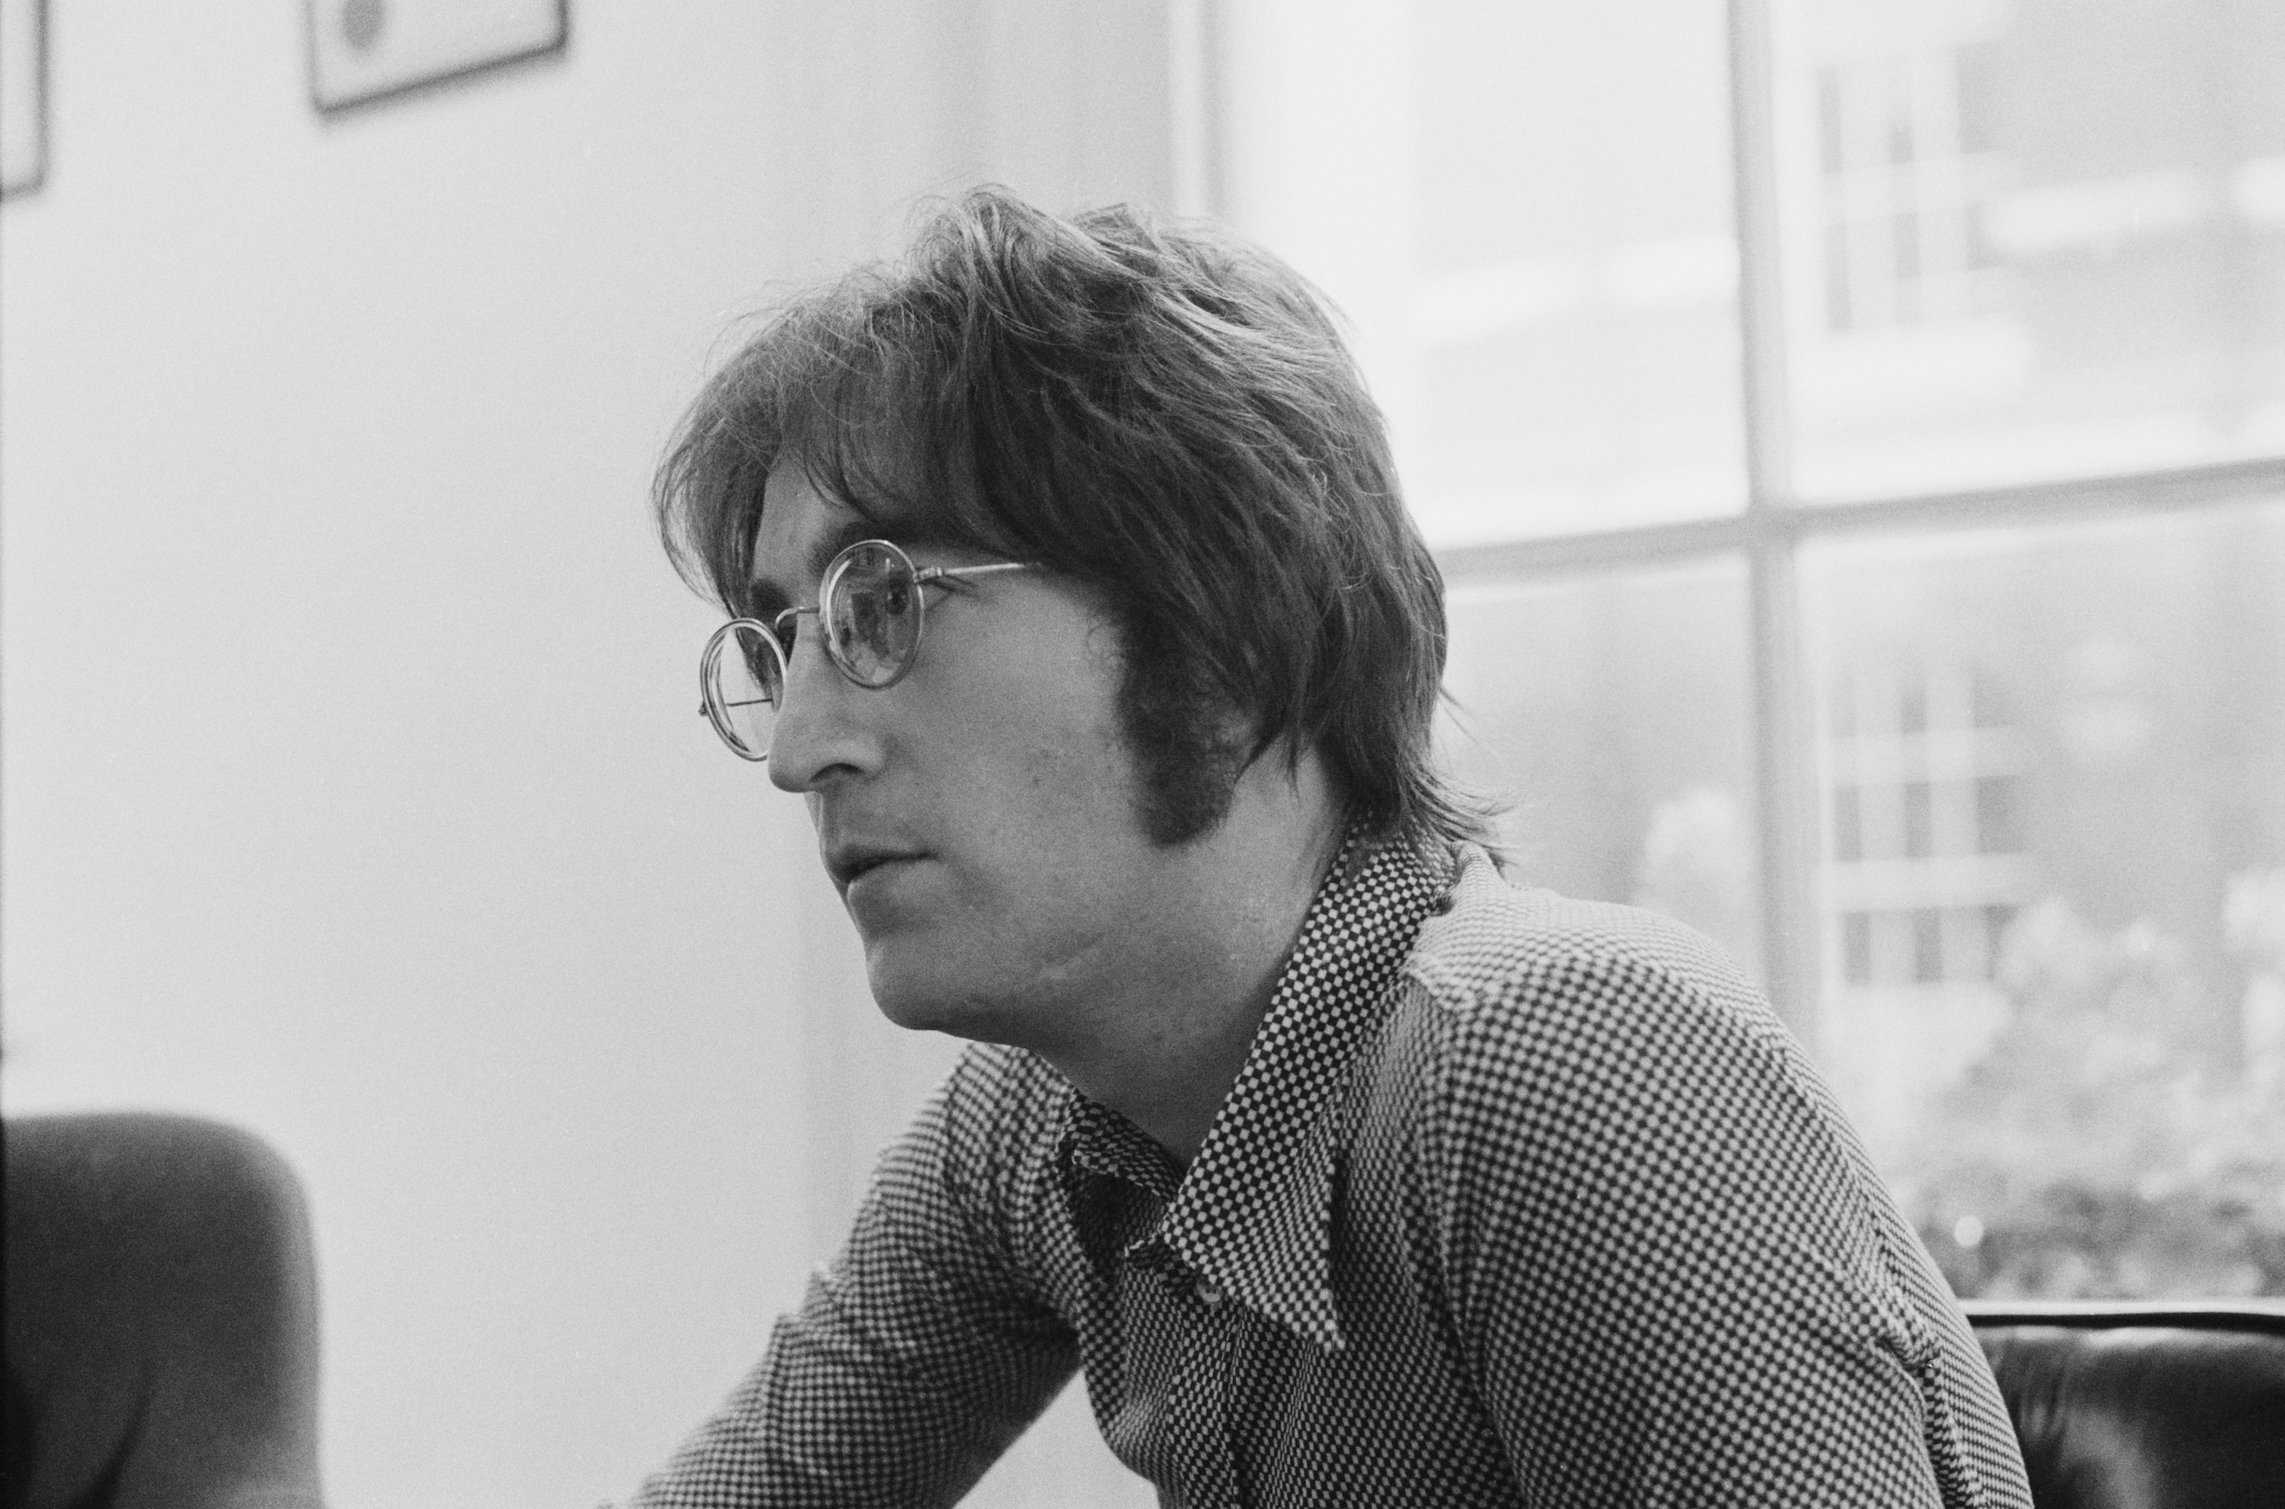 John Lennon being interviewed in London